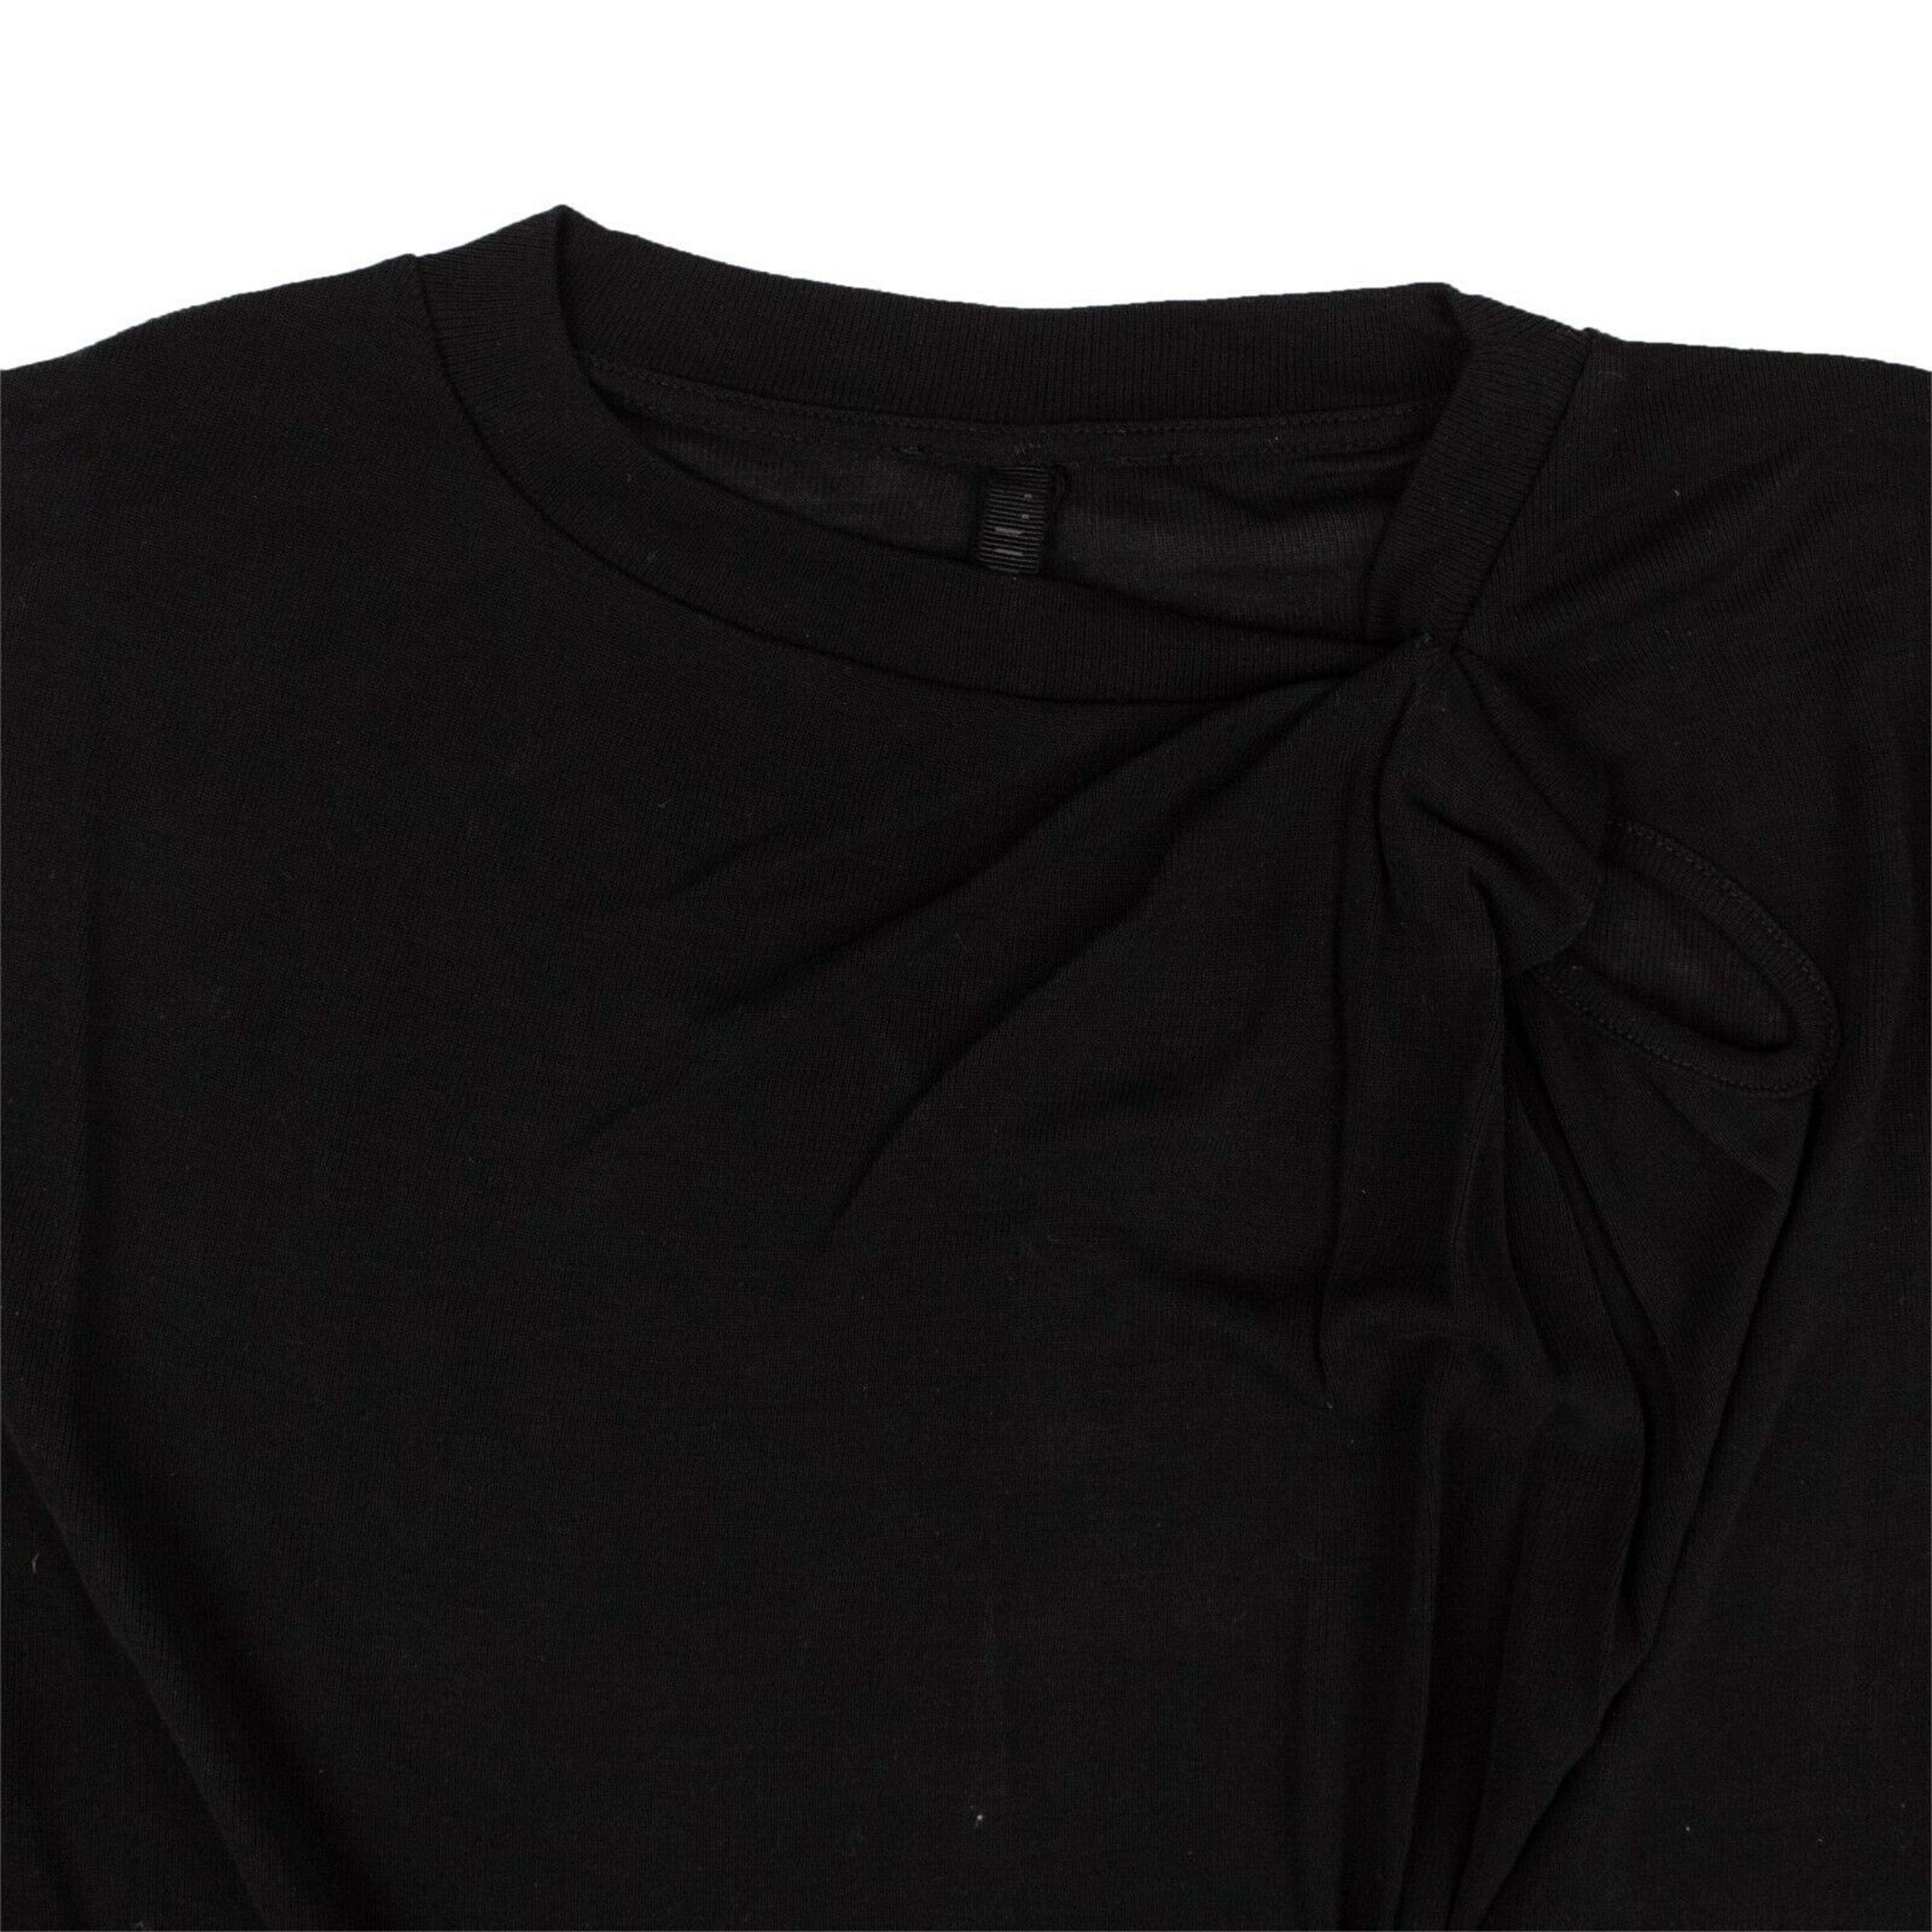 Alternate View 1 of Black Silk Pintuck T-Shirt